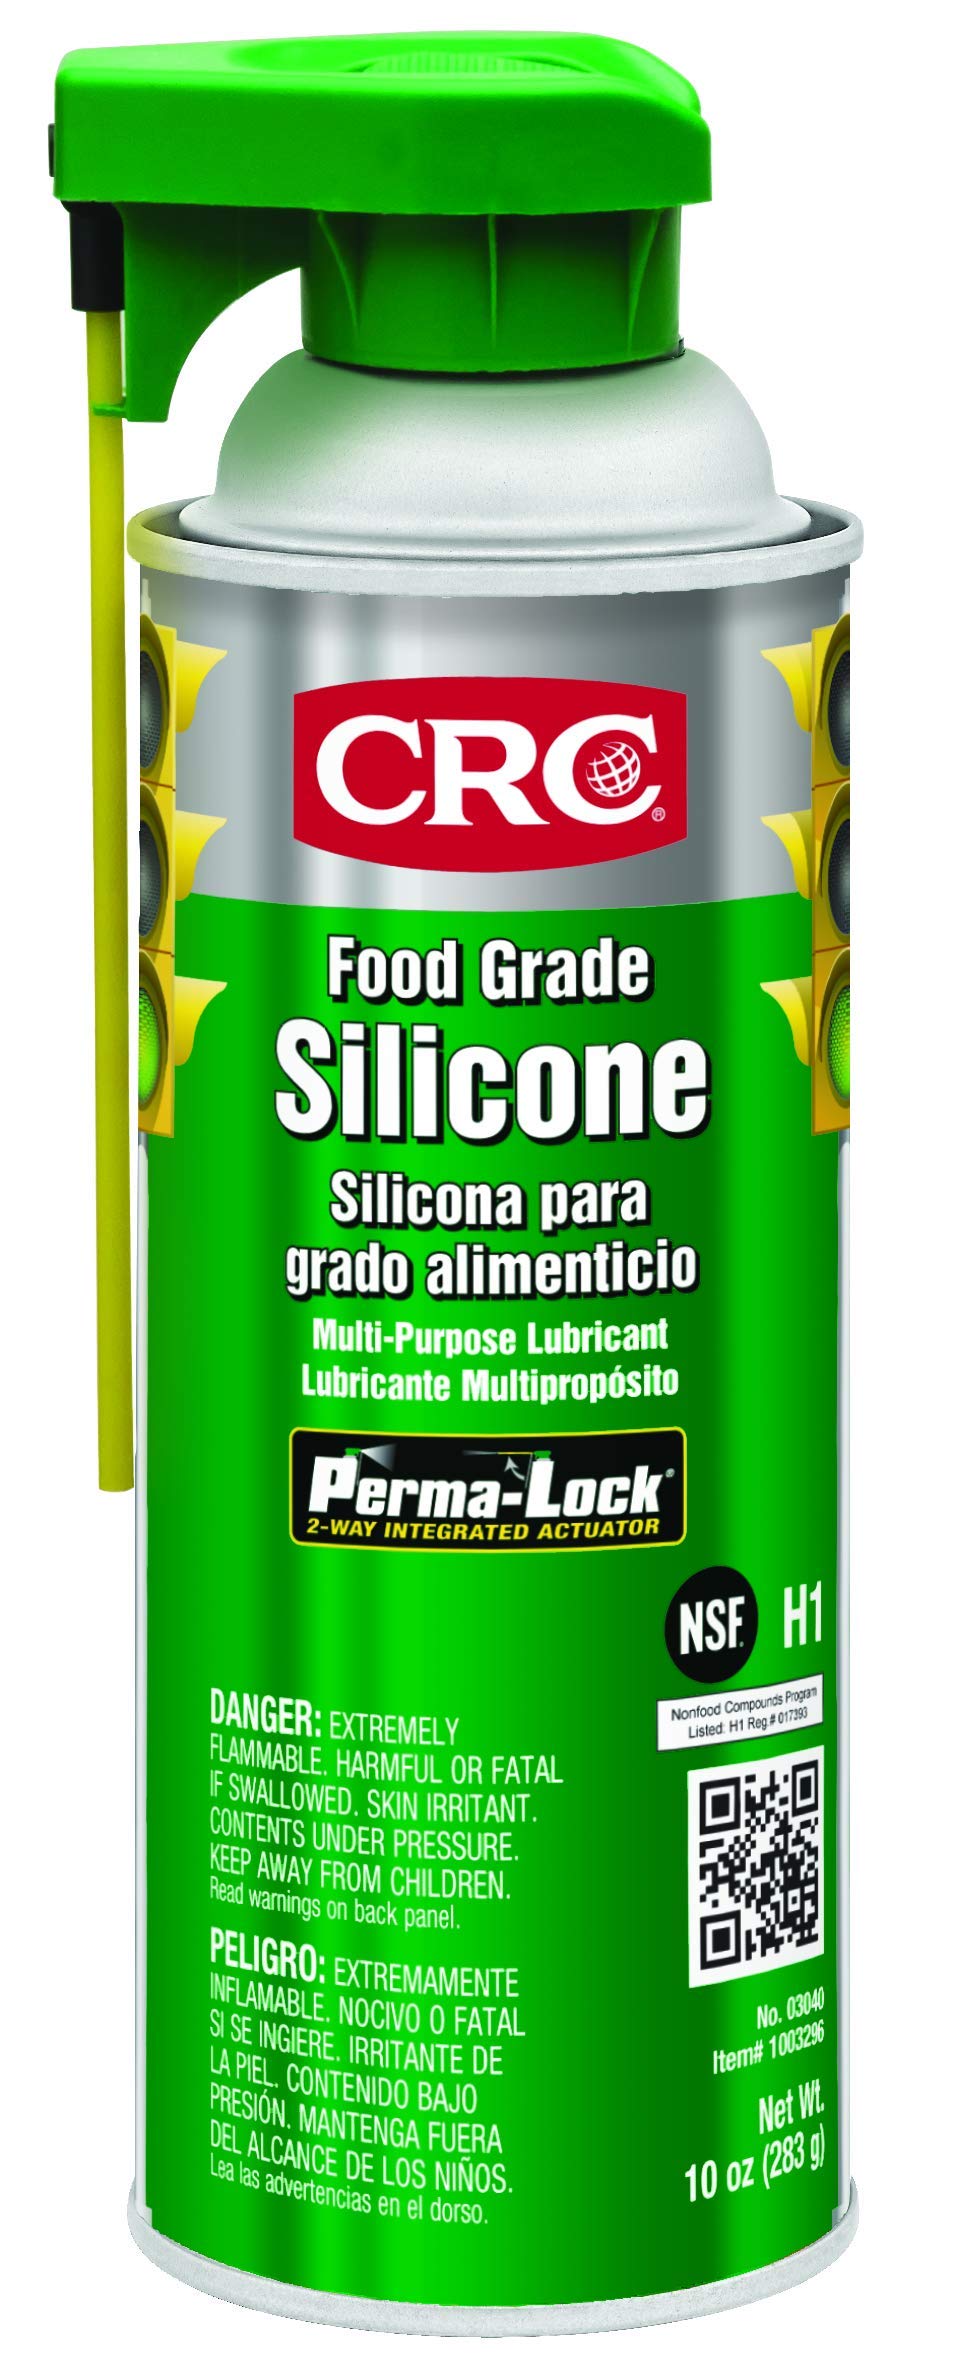 CRC 食品级硅胶，10 重量盎司，适用于高温应用的多用途硅胶润滑剂，NSF H1 注册气溶胶喷雾